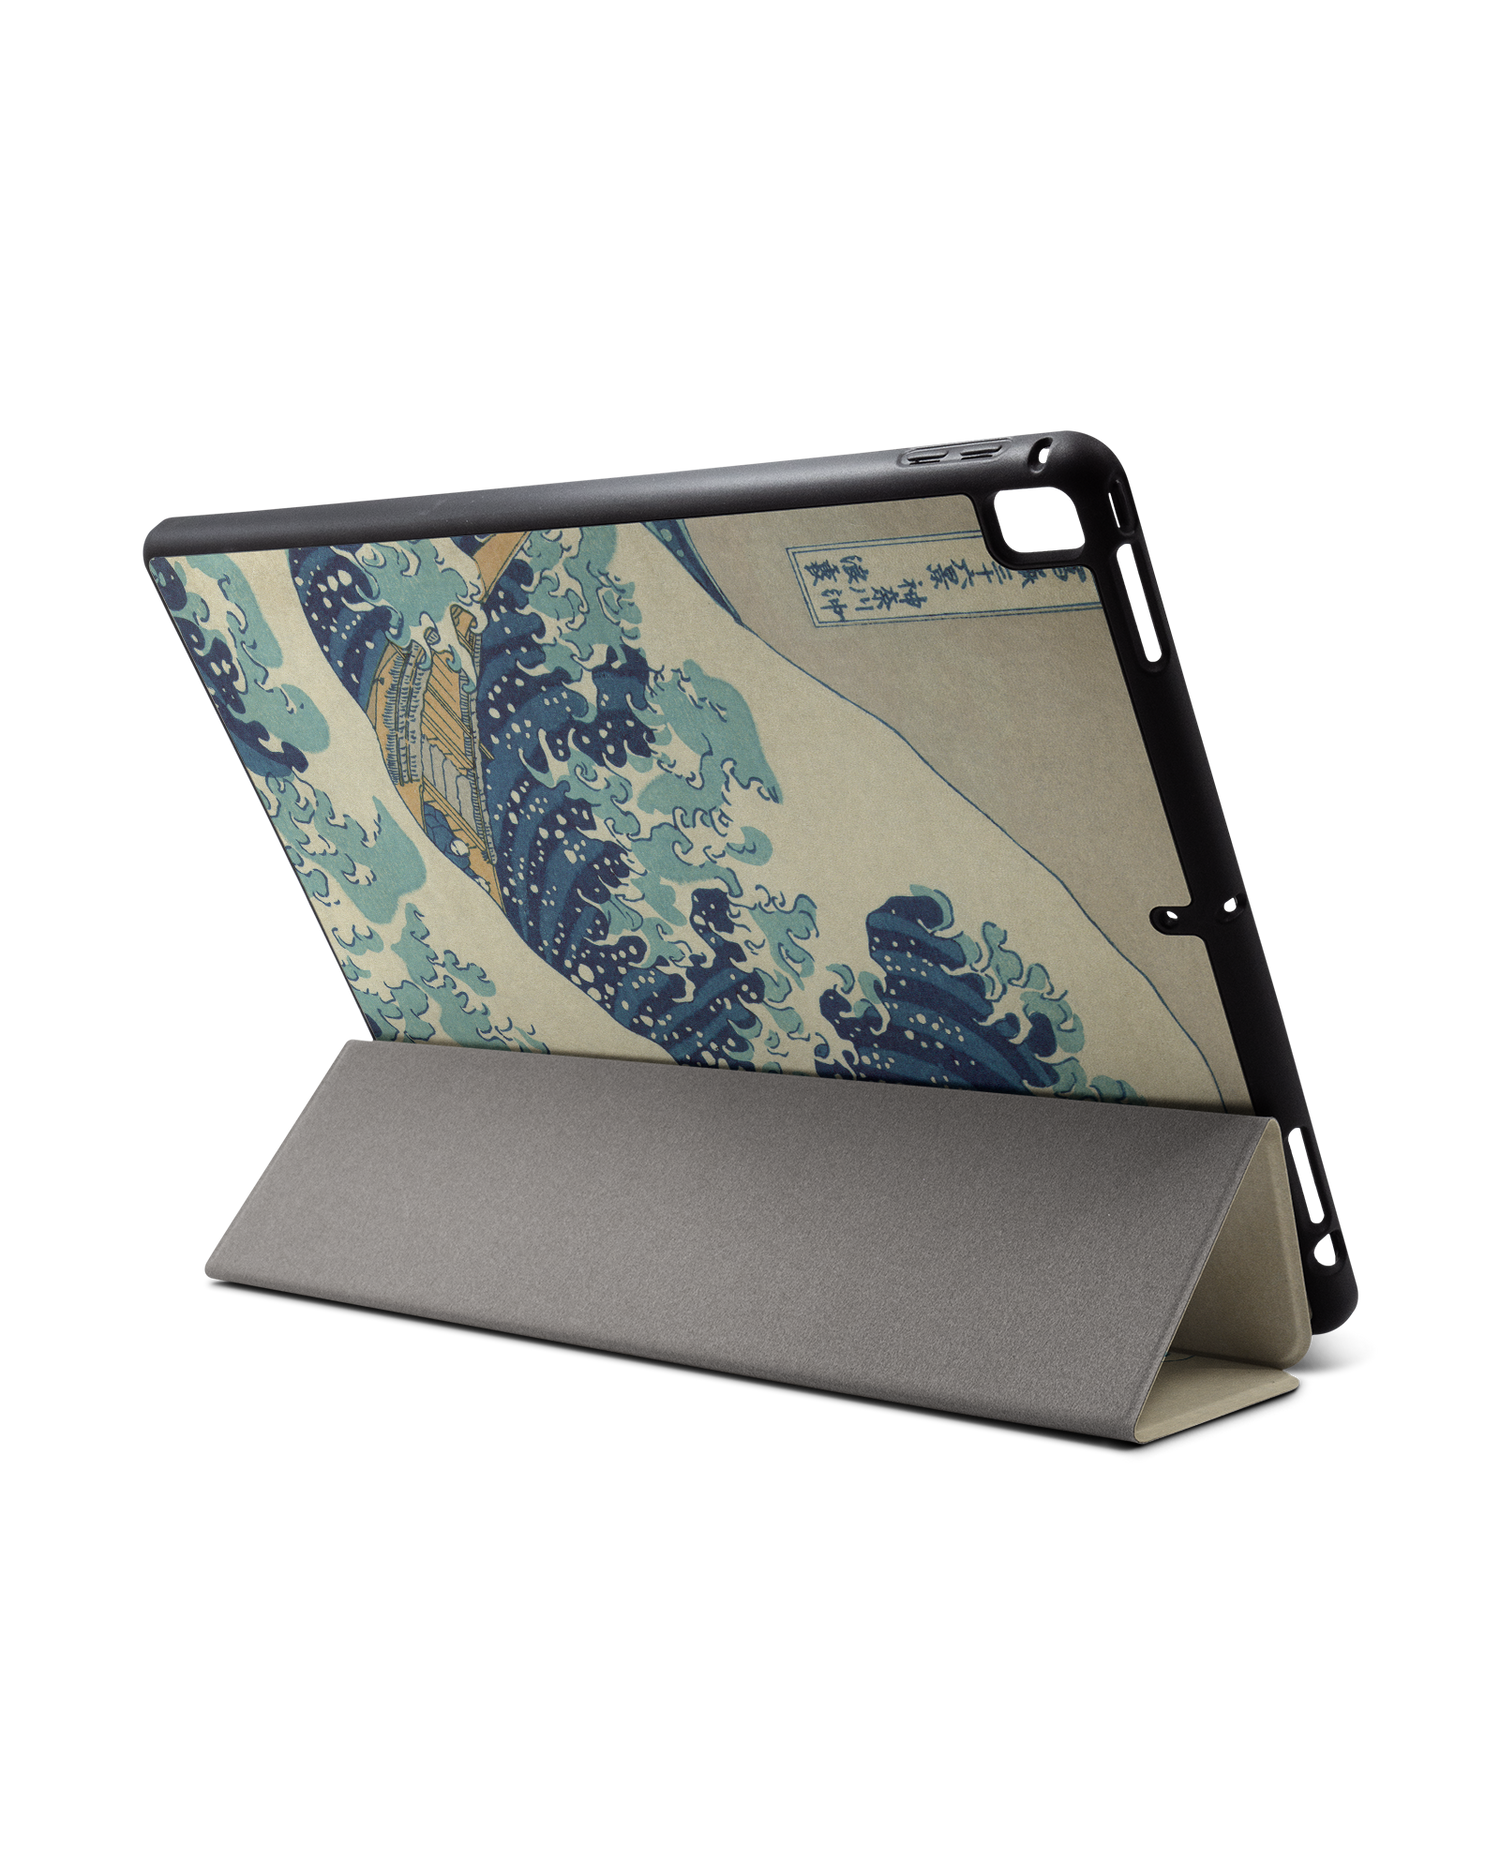 Great Wave Off Kanagawa By Hokusai iPad Hülle mit Stifthalter für Apple iPad Pro 2 12.9'' (2017): Aufgestellt im Querformat von hinten